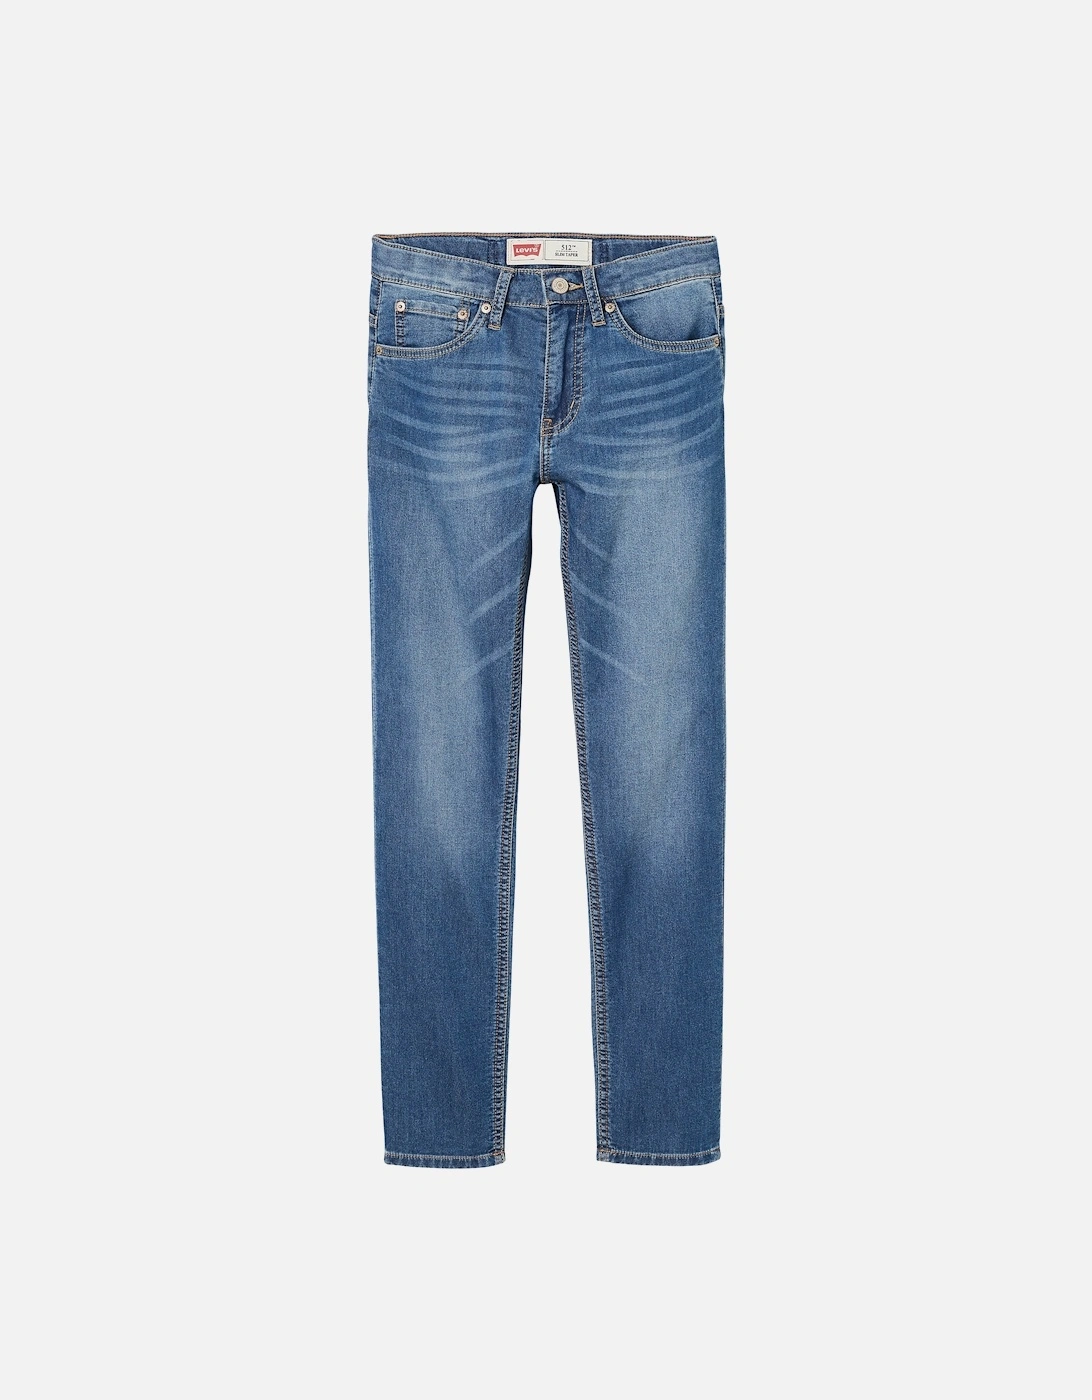 Levis Juniors 512 Slim Taper Jeans (Blue), 3 of 2